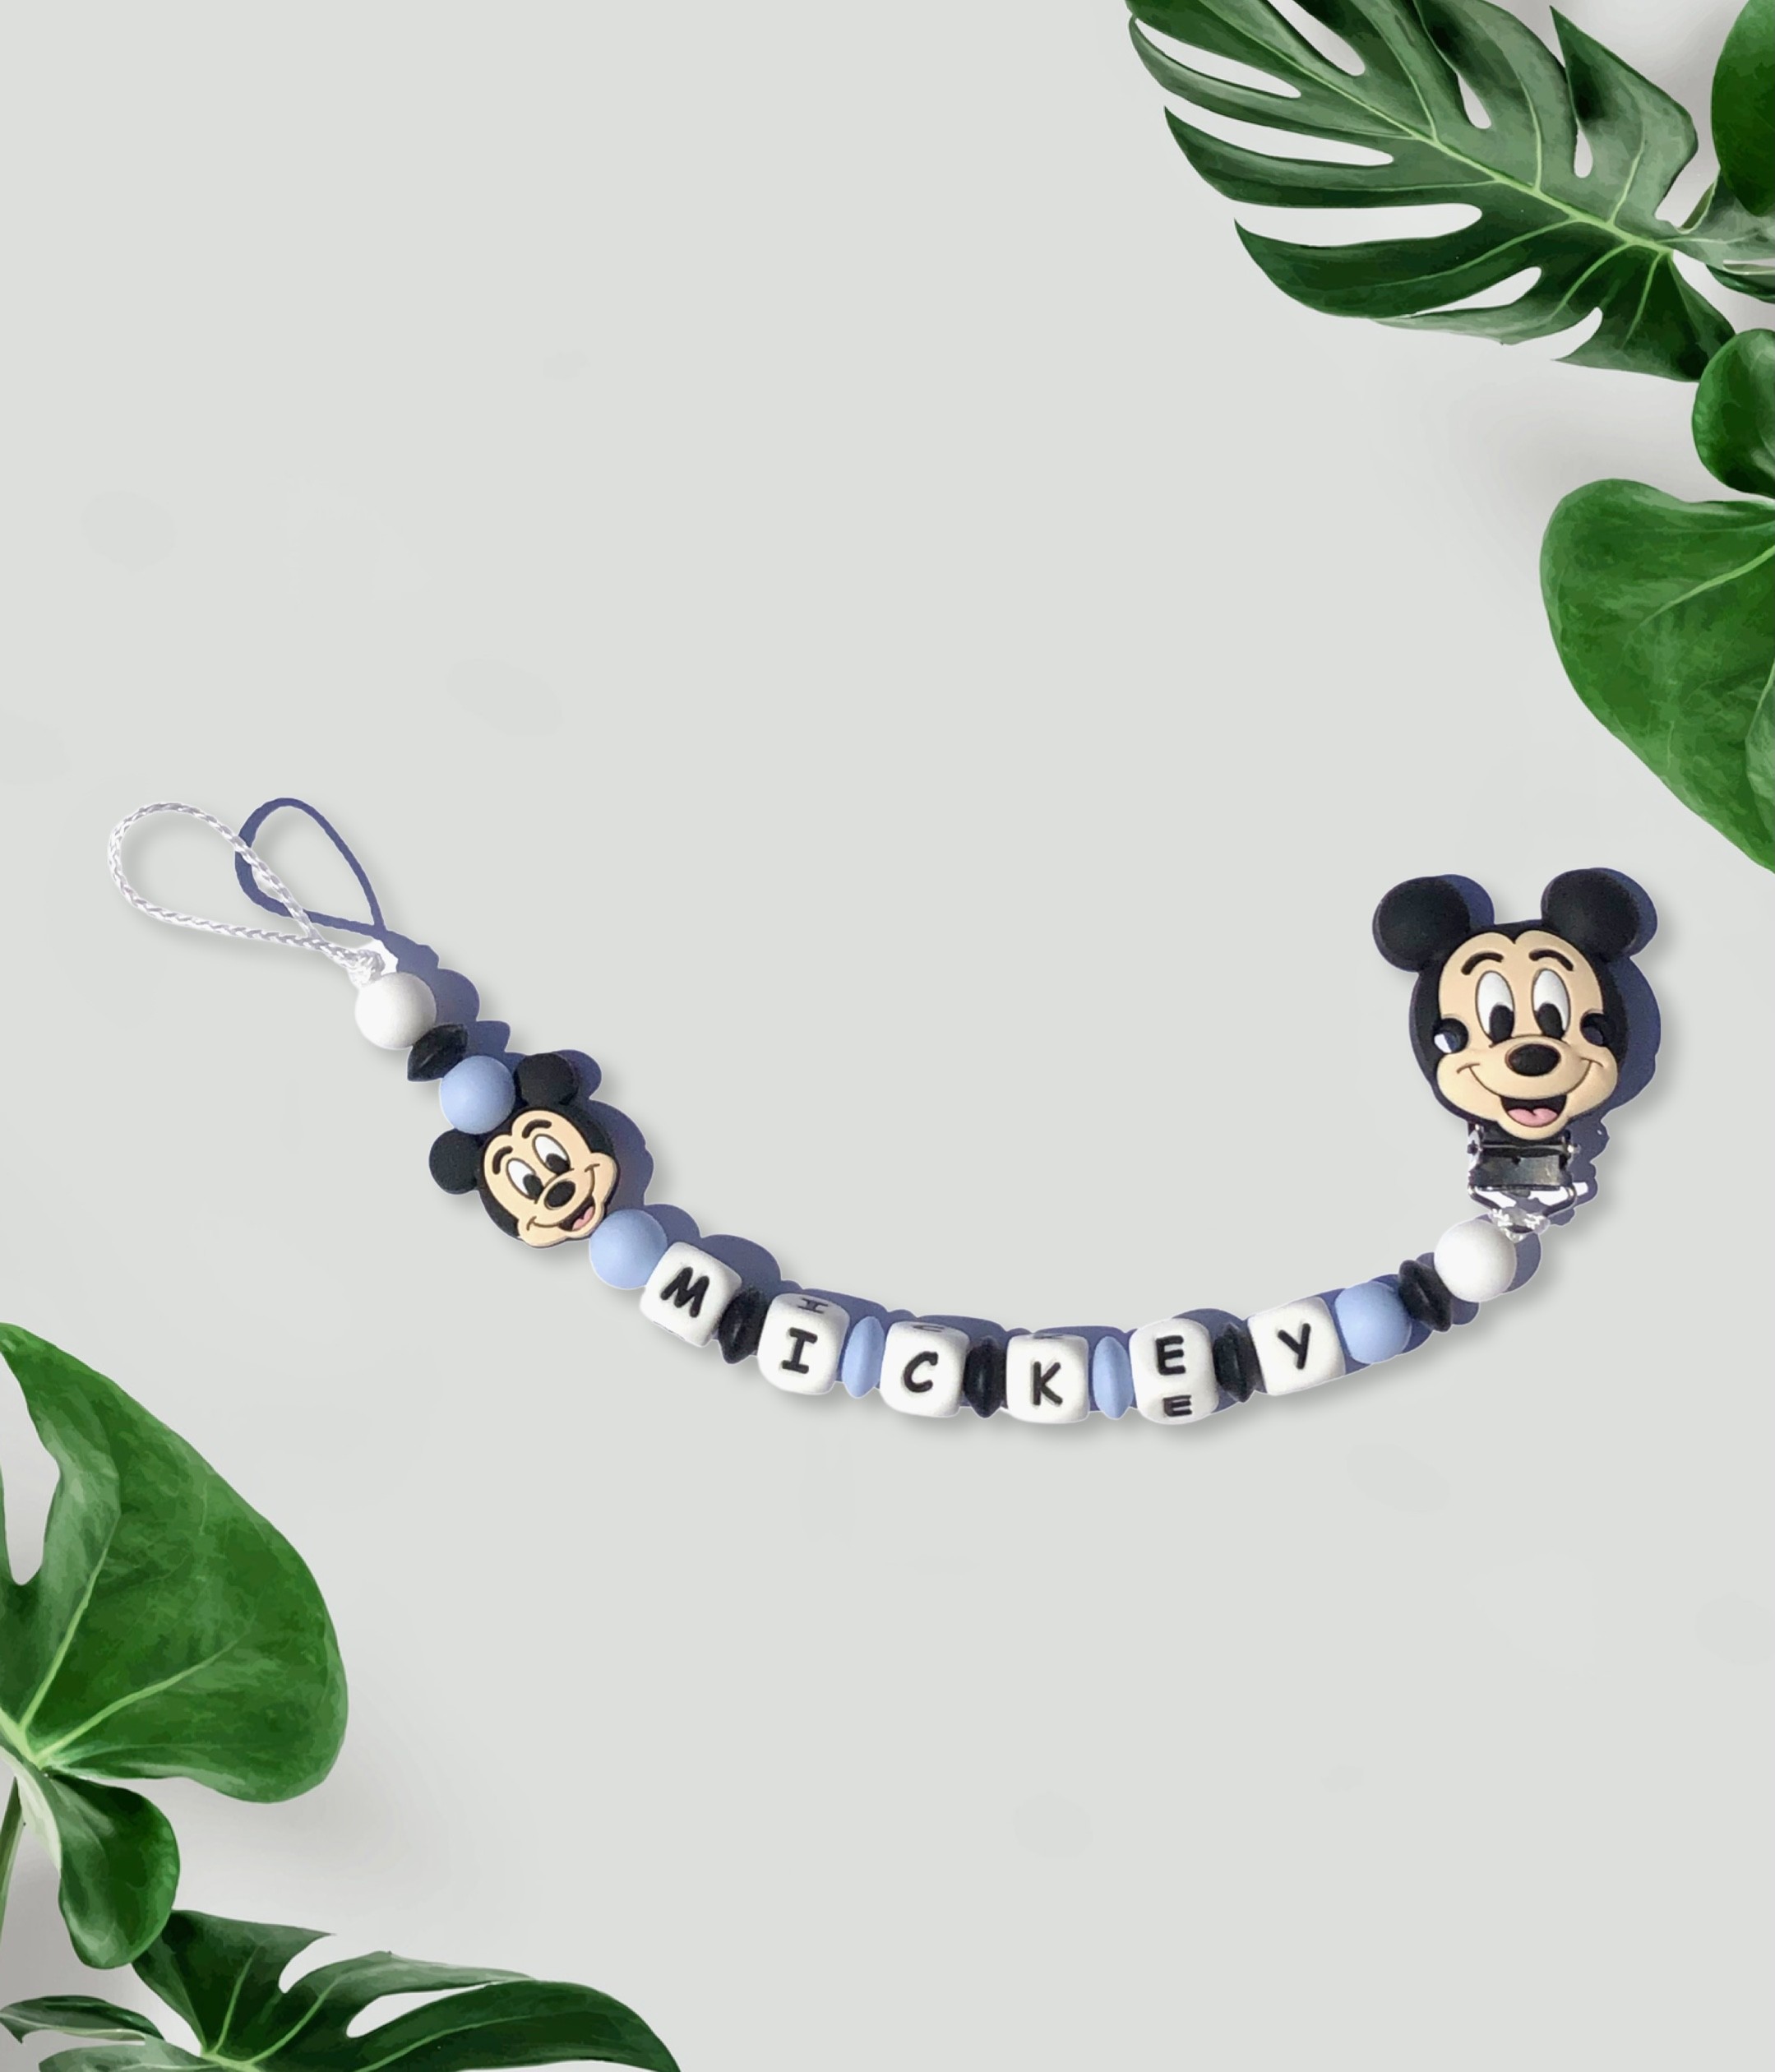 Attache tétine personnalisée Mickey pour bébé : prénom, couleurs, formes